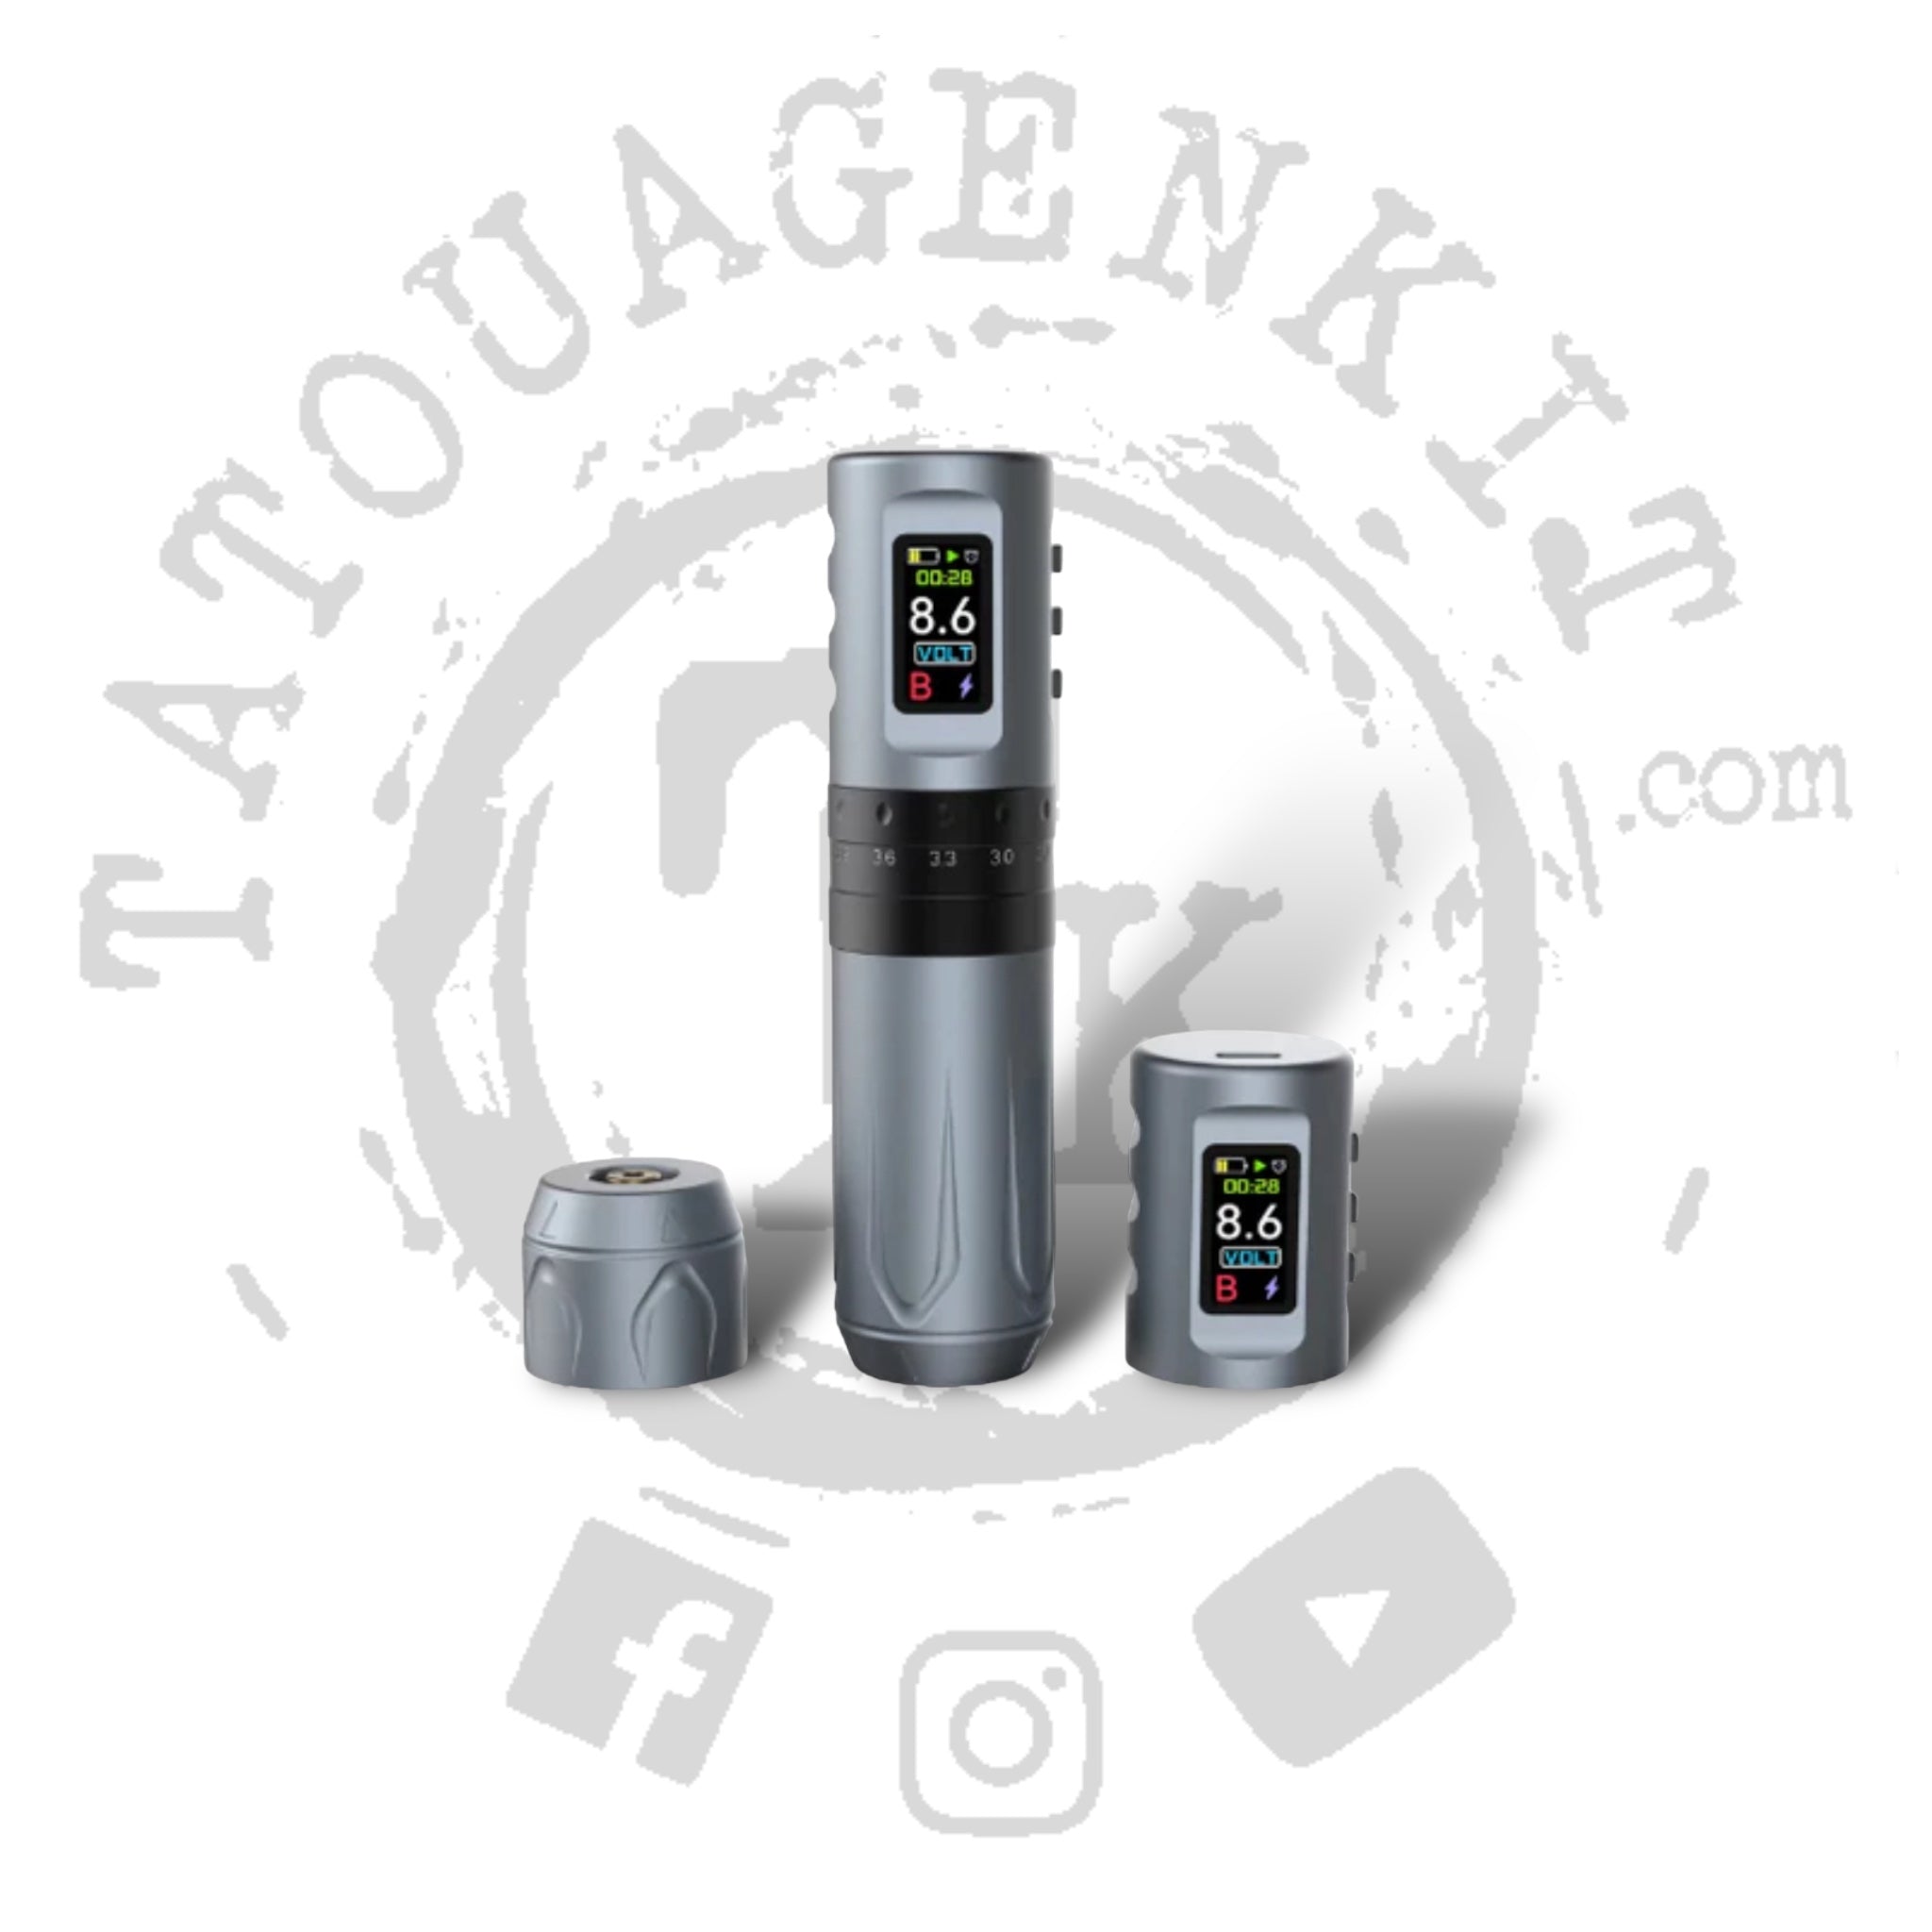 Coffret Stylo Tatouage Batterie B33AN